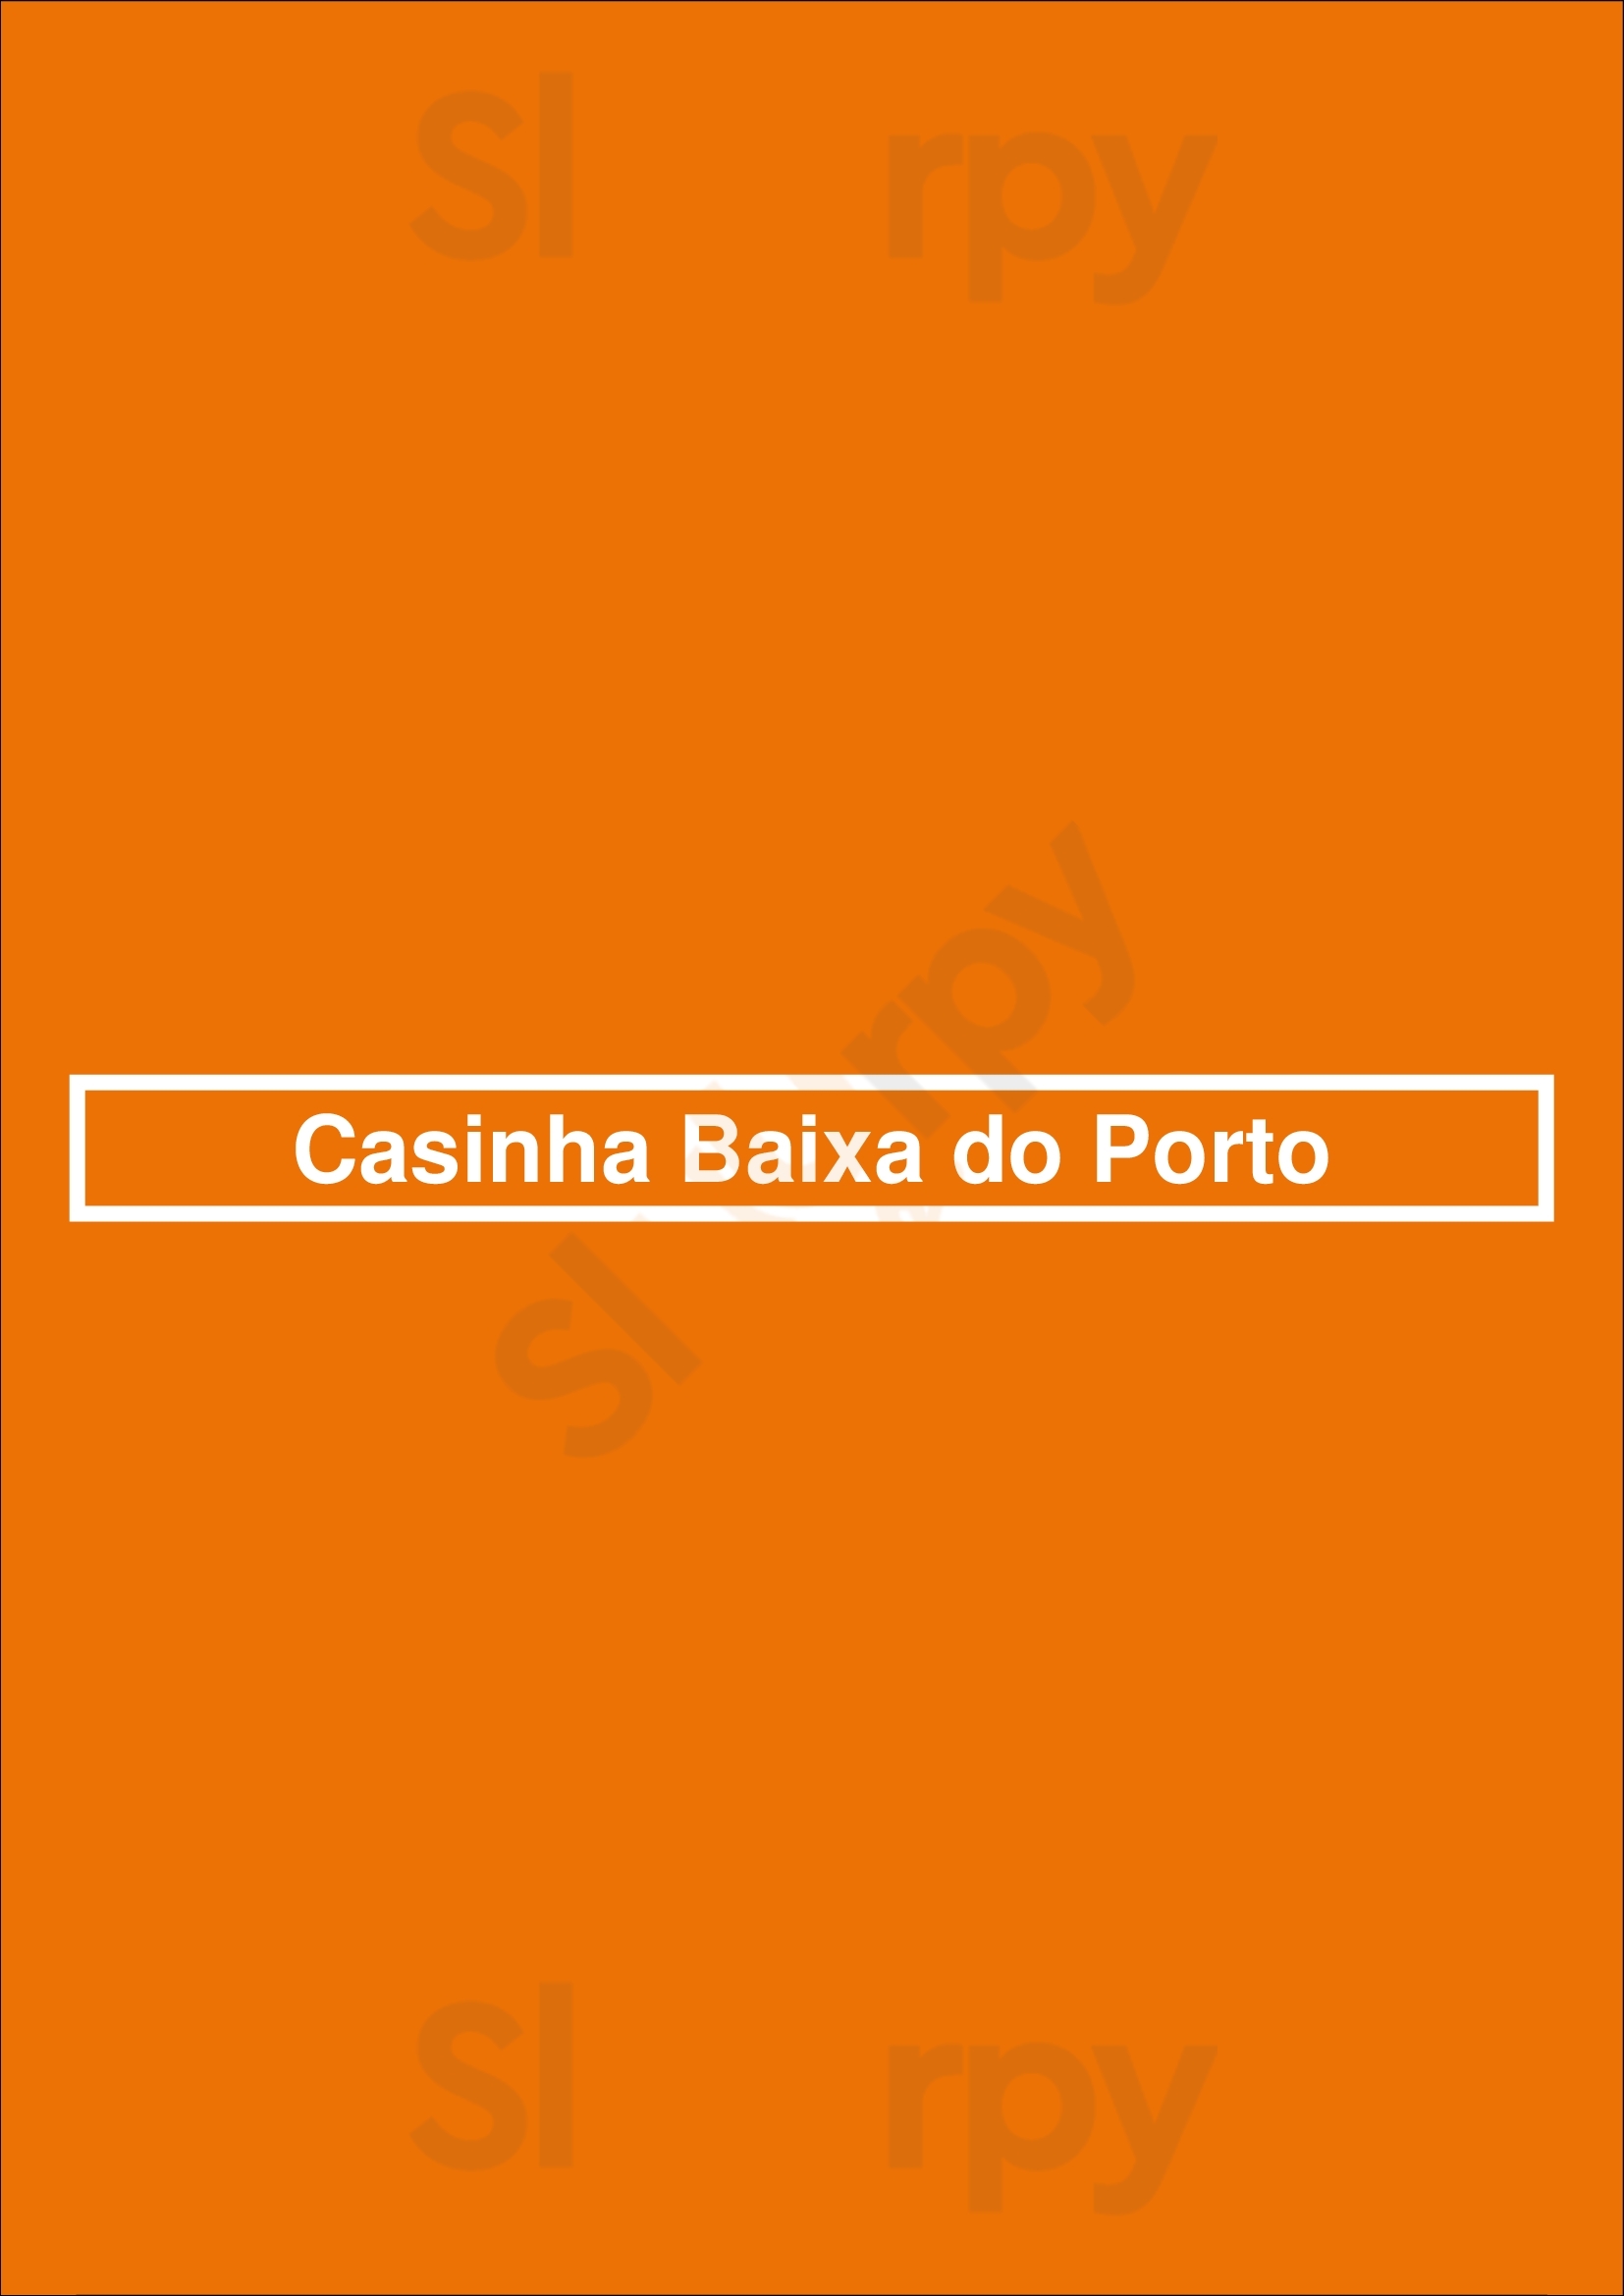 Casinha Baixa Do Porto Porto Menu - 1